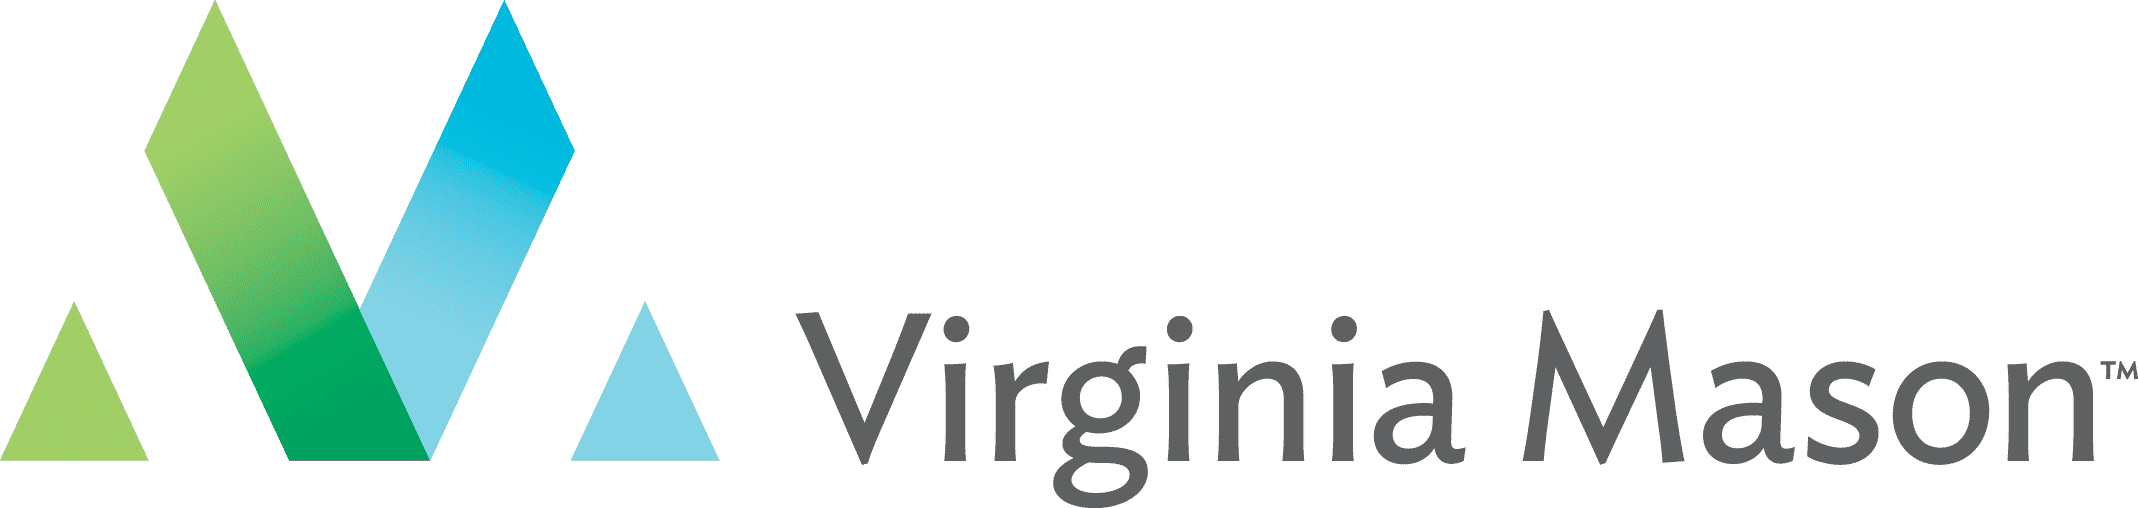 Virginia Mason Logo